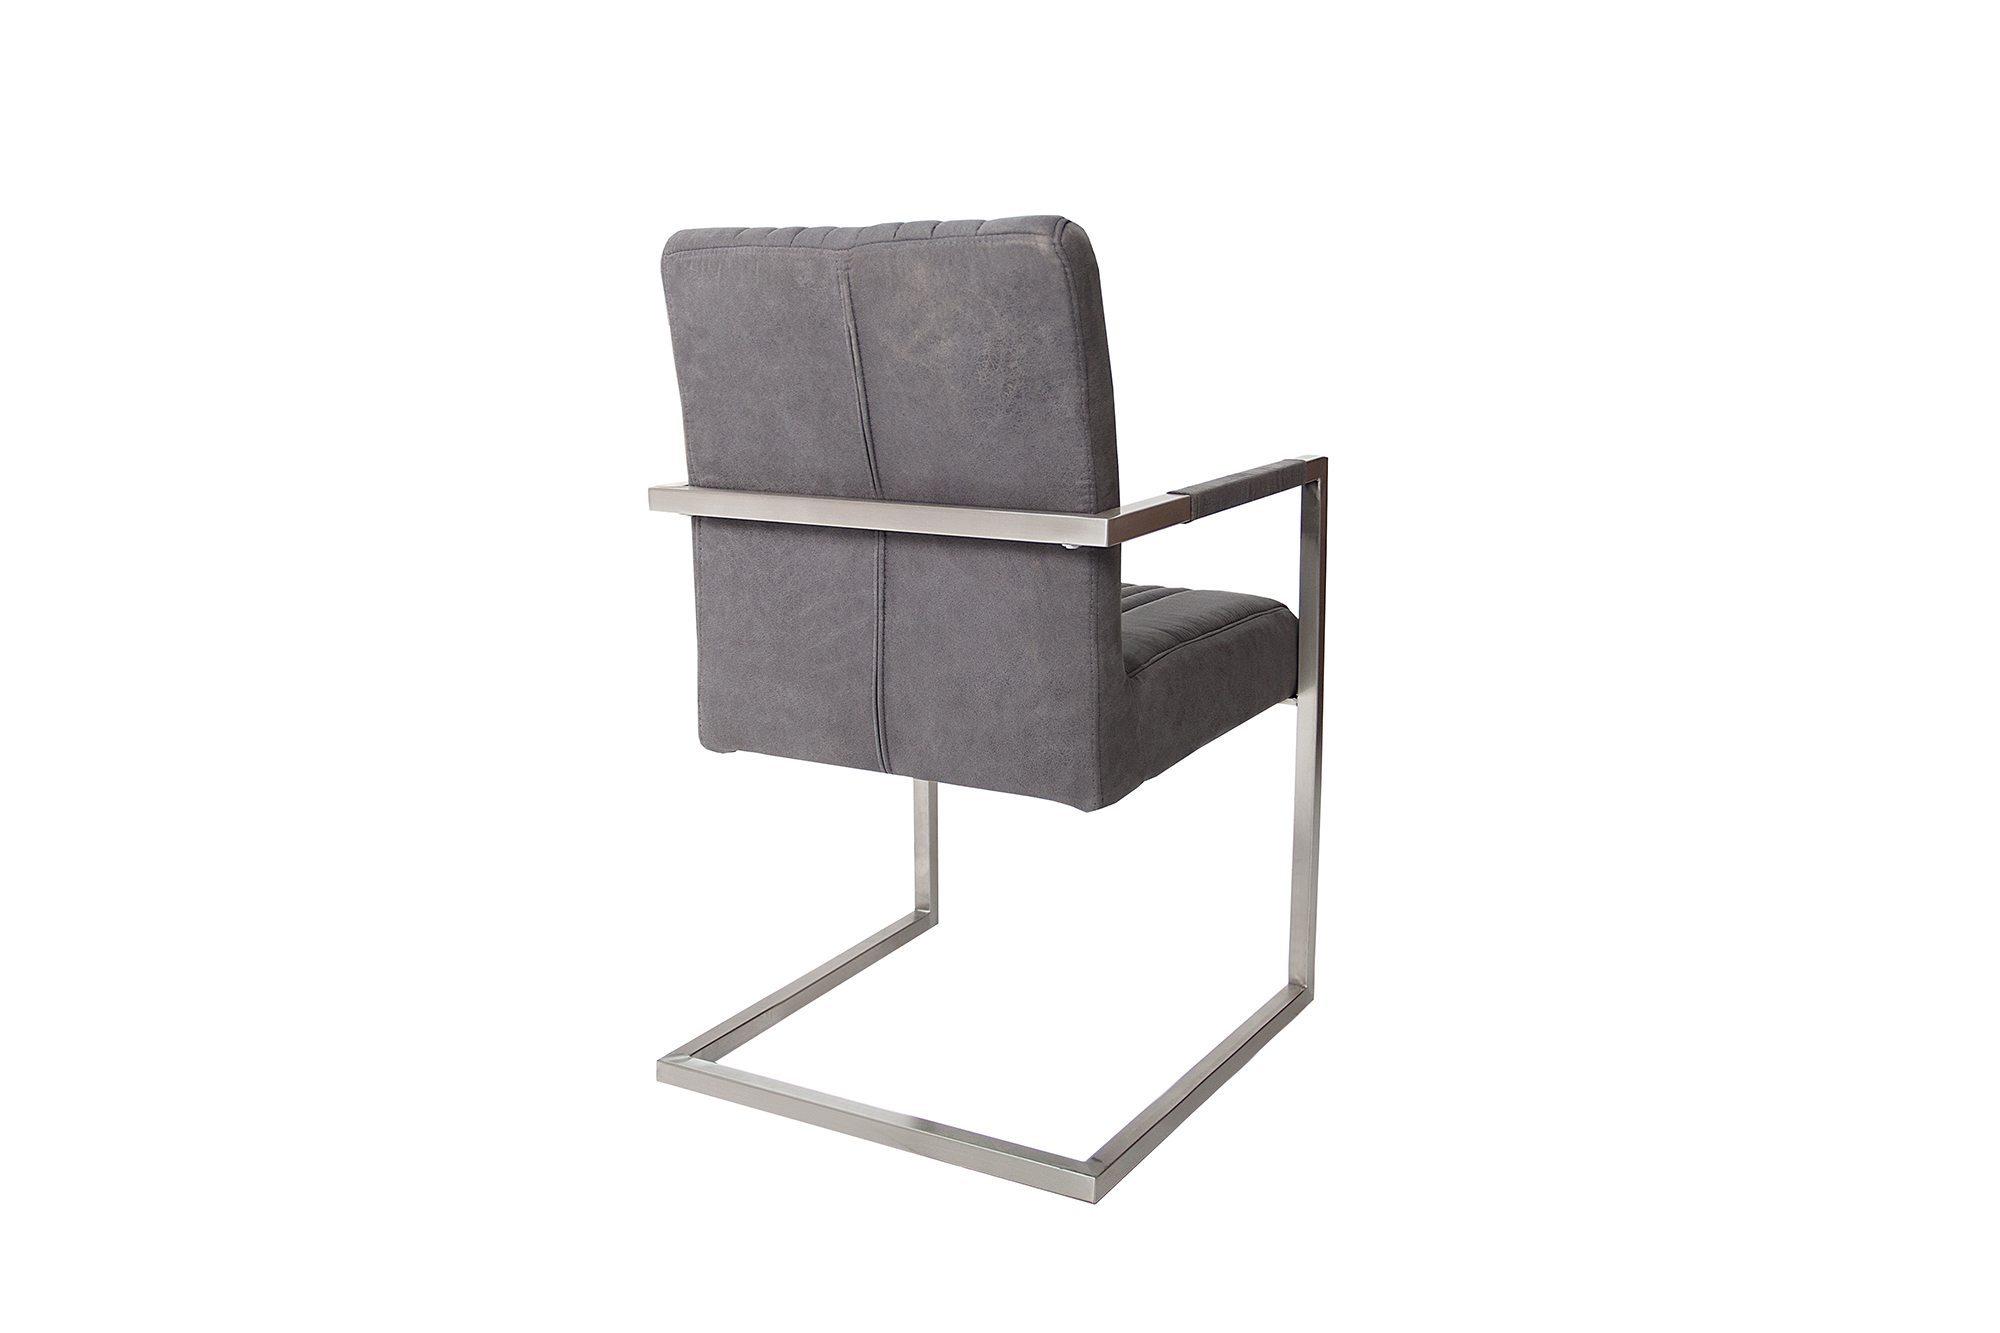 vrijdragende stoel vintage grijs